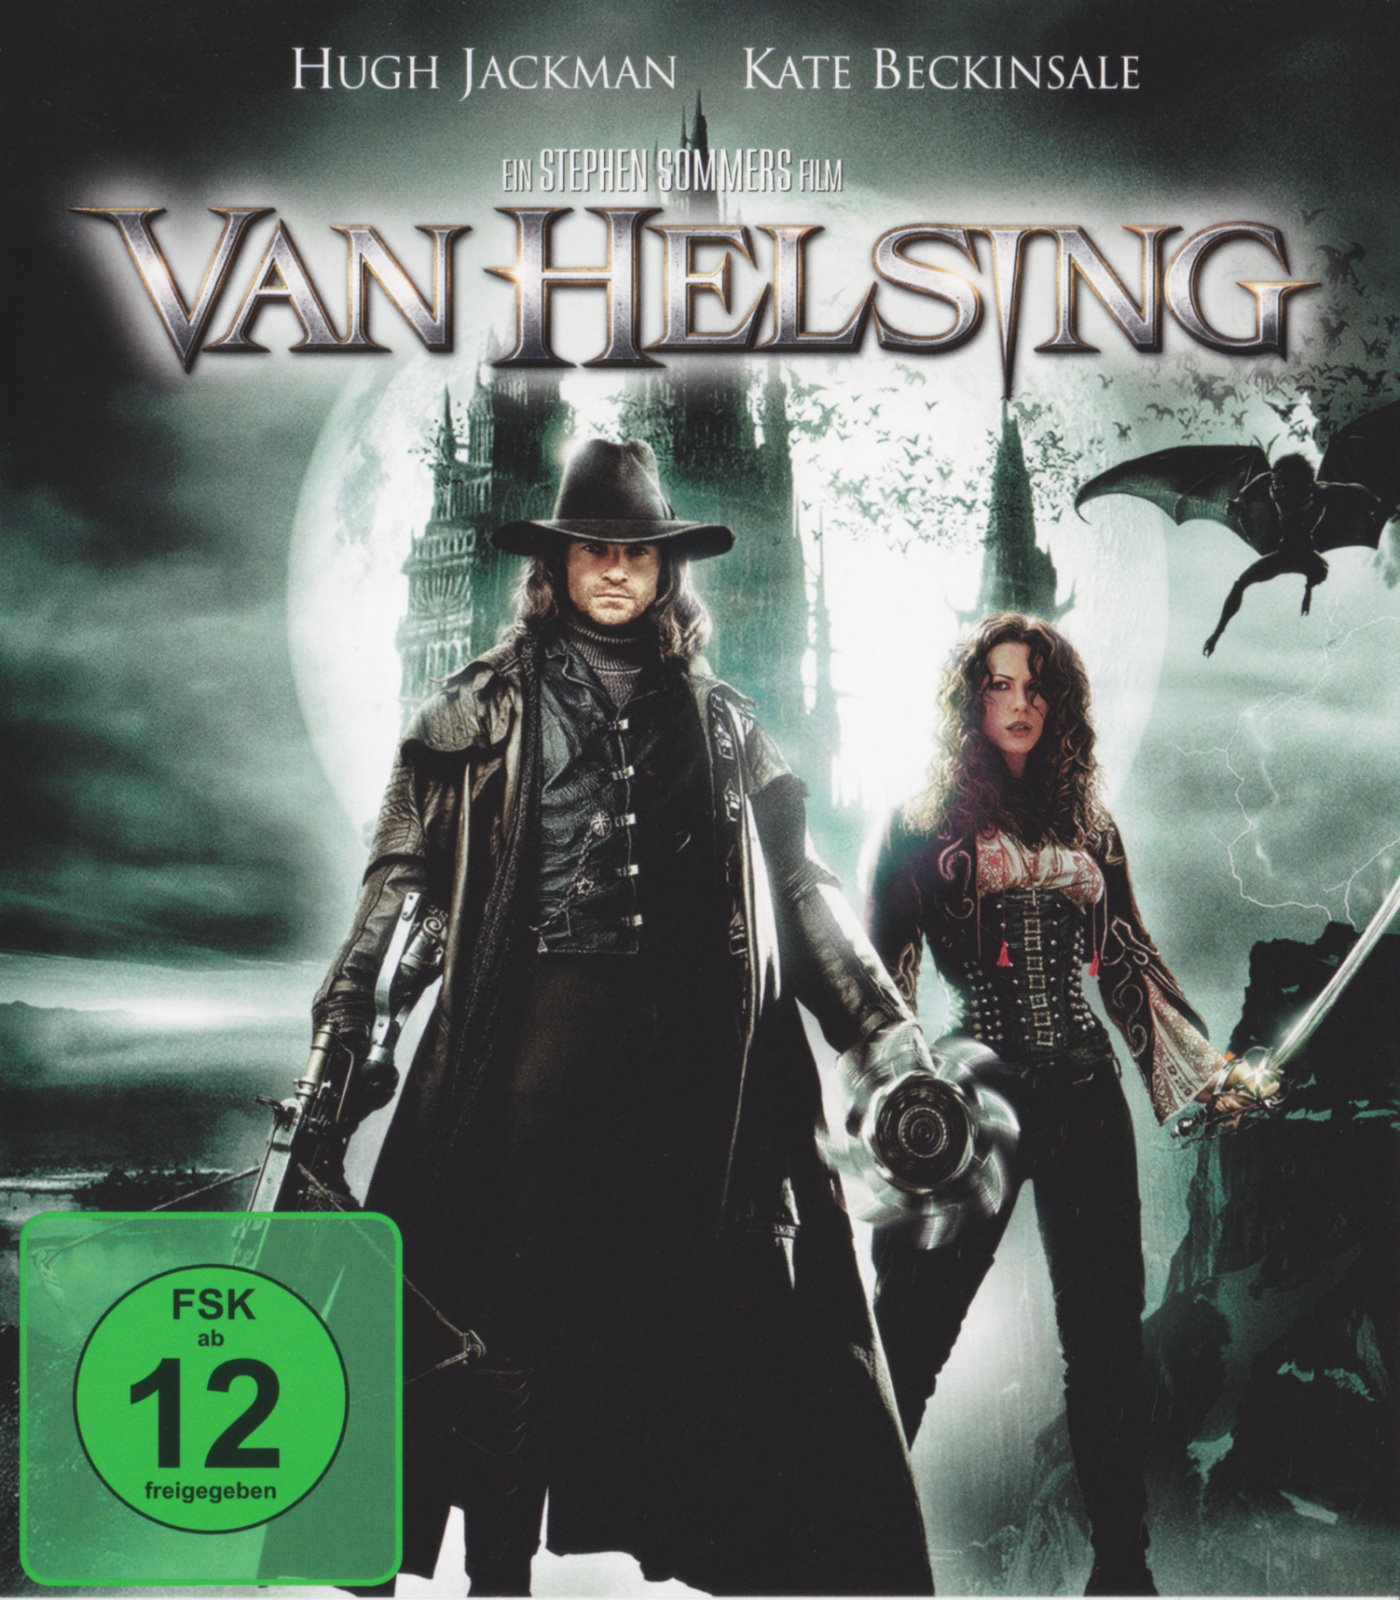 Cover - Van Helsing.jpg